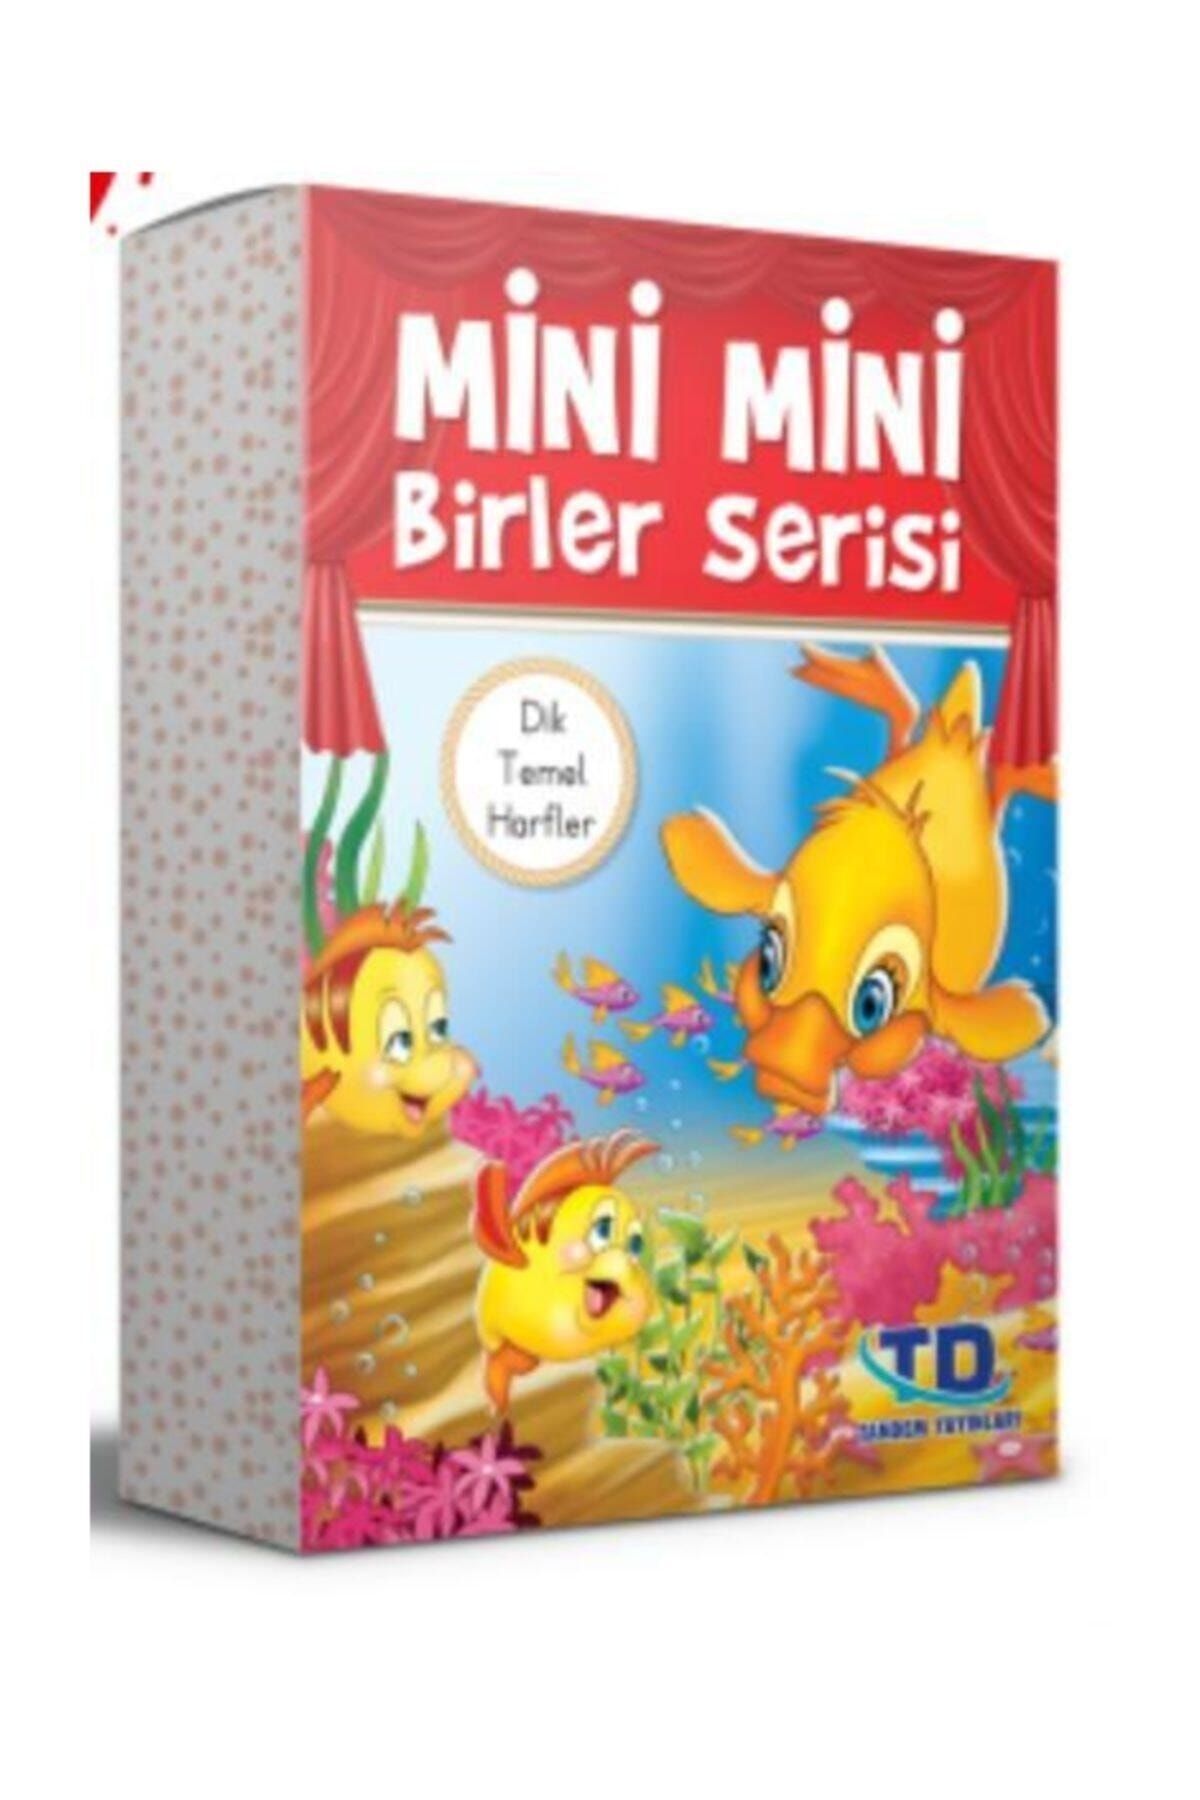 Tandem Yayınları Mini Mini Birler Serisi Dik Temel Harflerle (20 KİTAP)